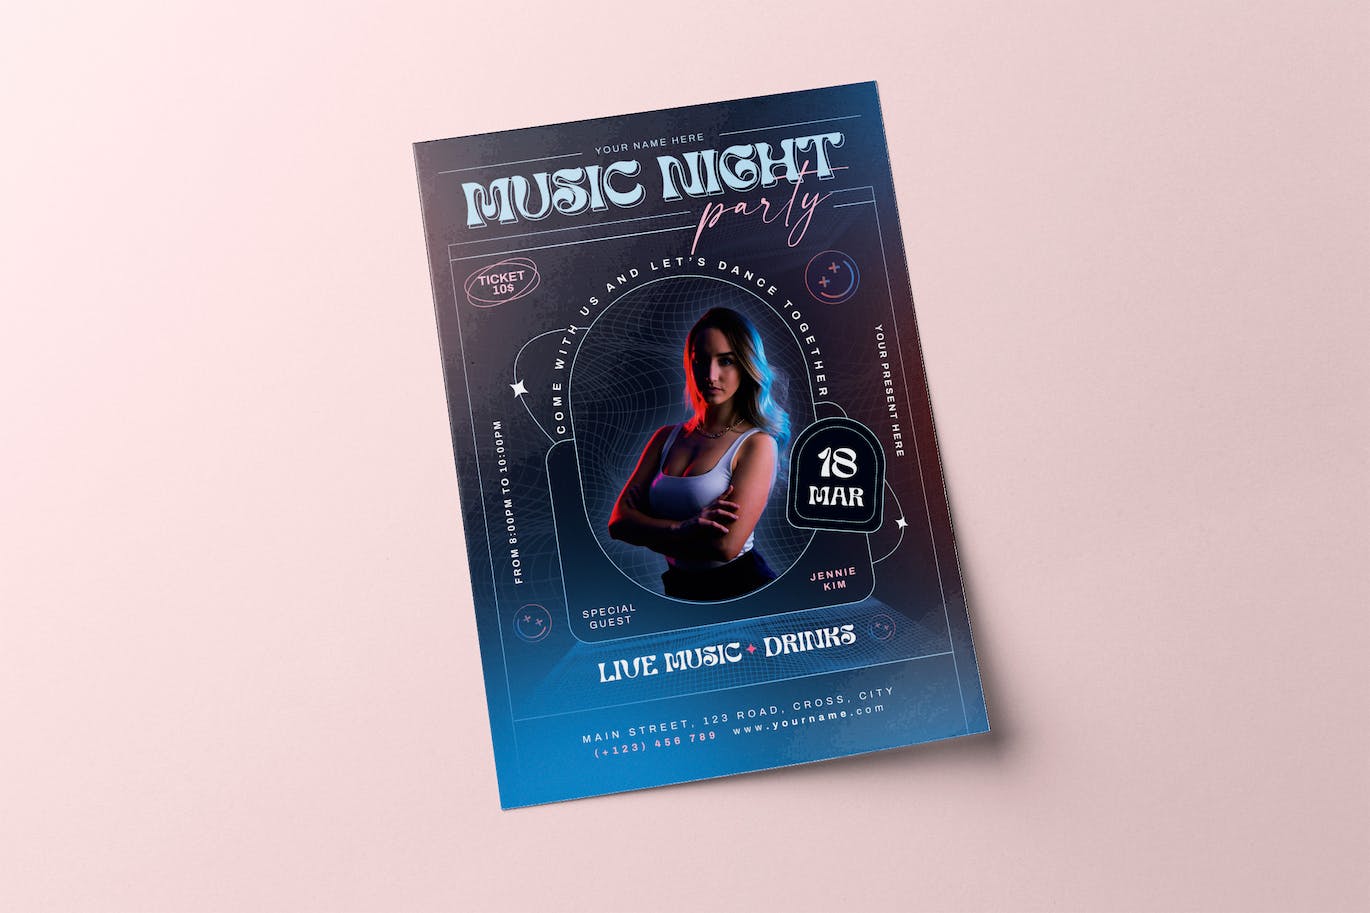 夜间聚会派对宣传单模板 Night Party Flyer 设计素材 第1张